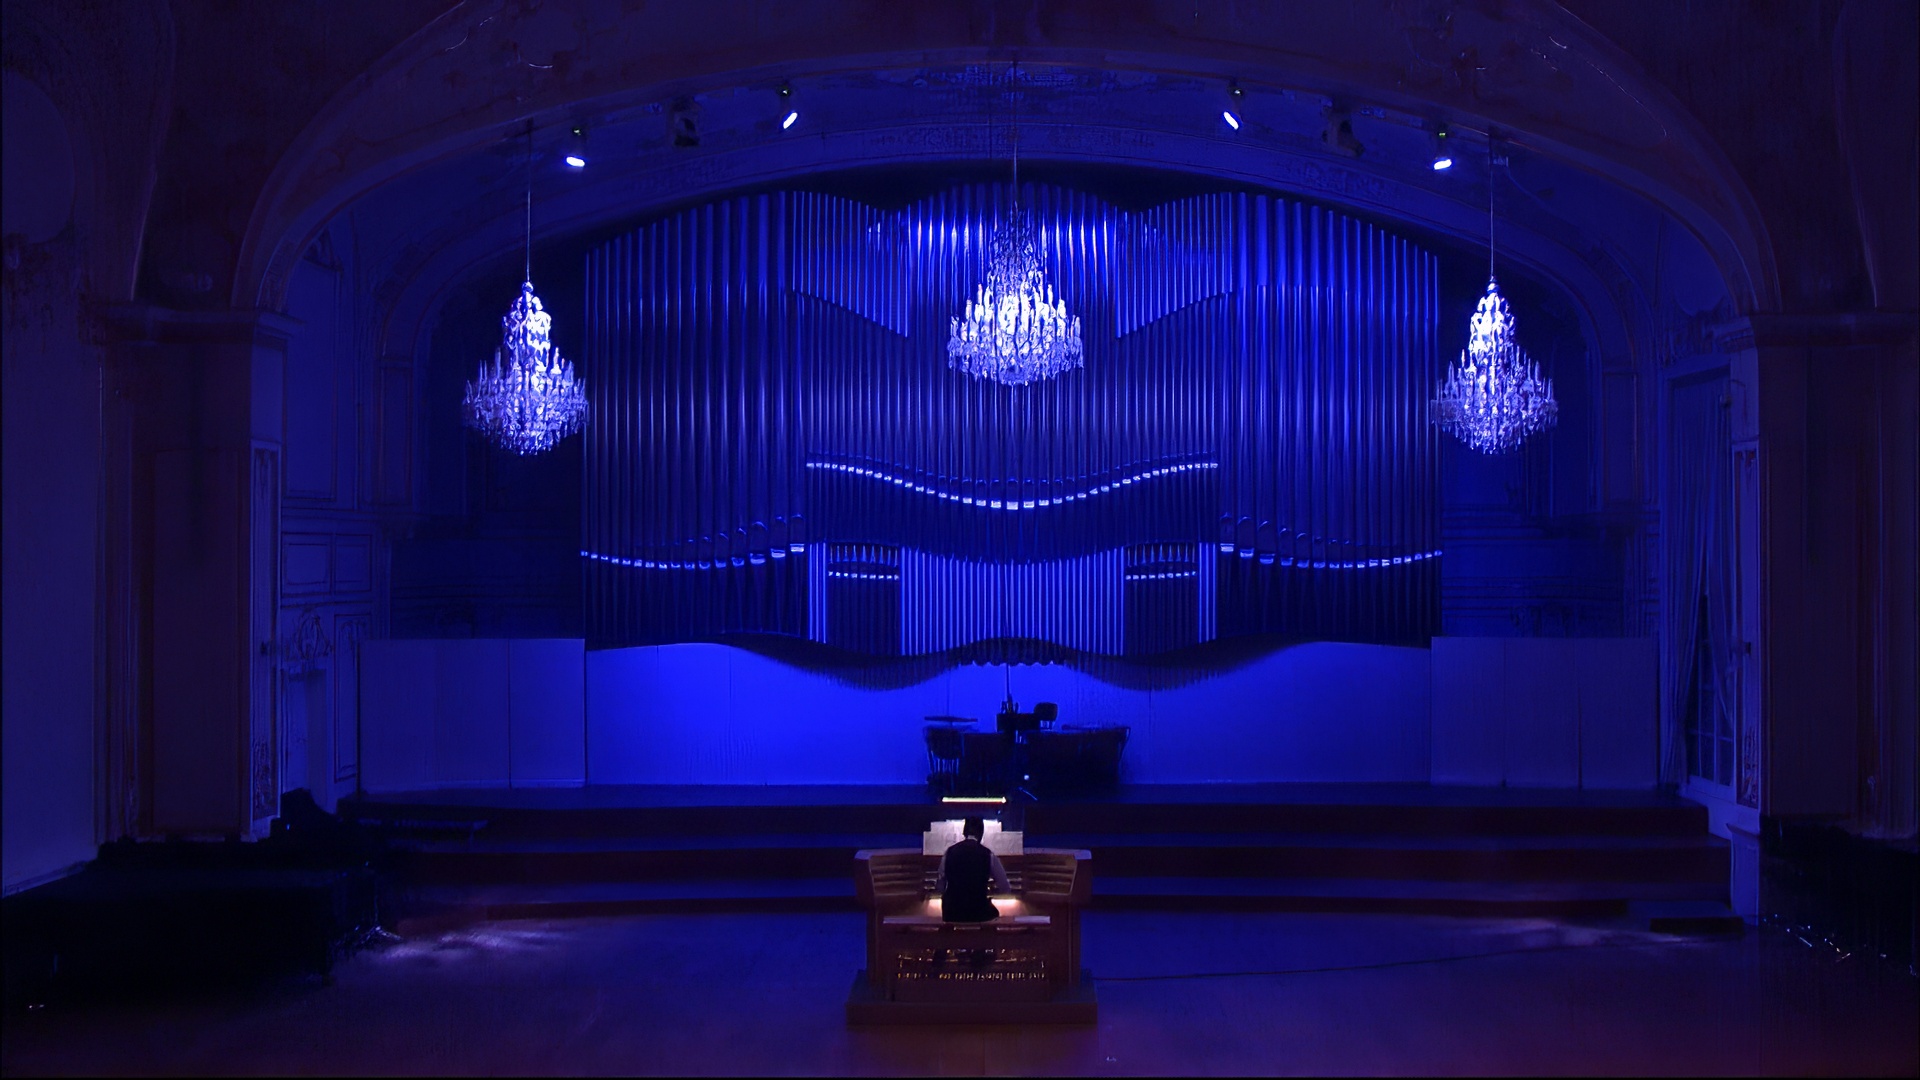 Hudobná akadémia III – Organ, kráľovský nástroj